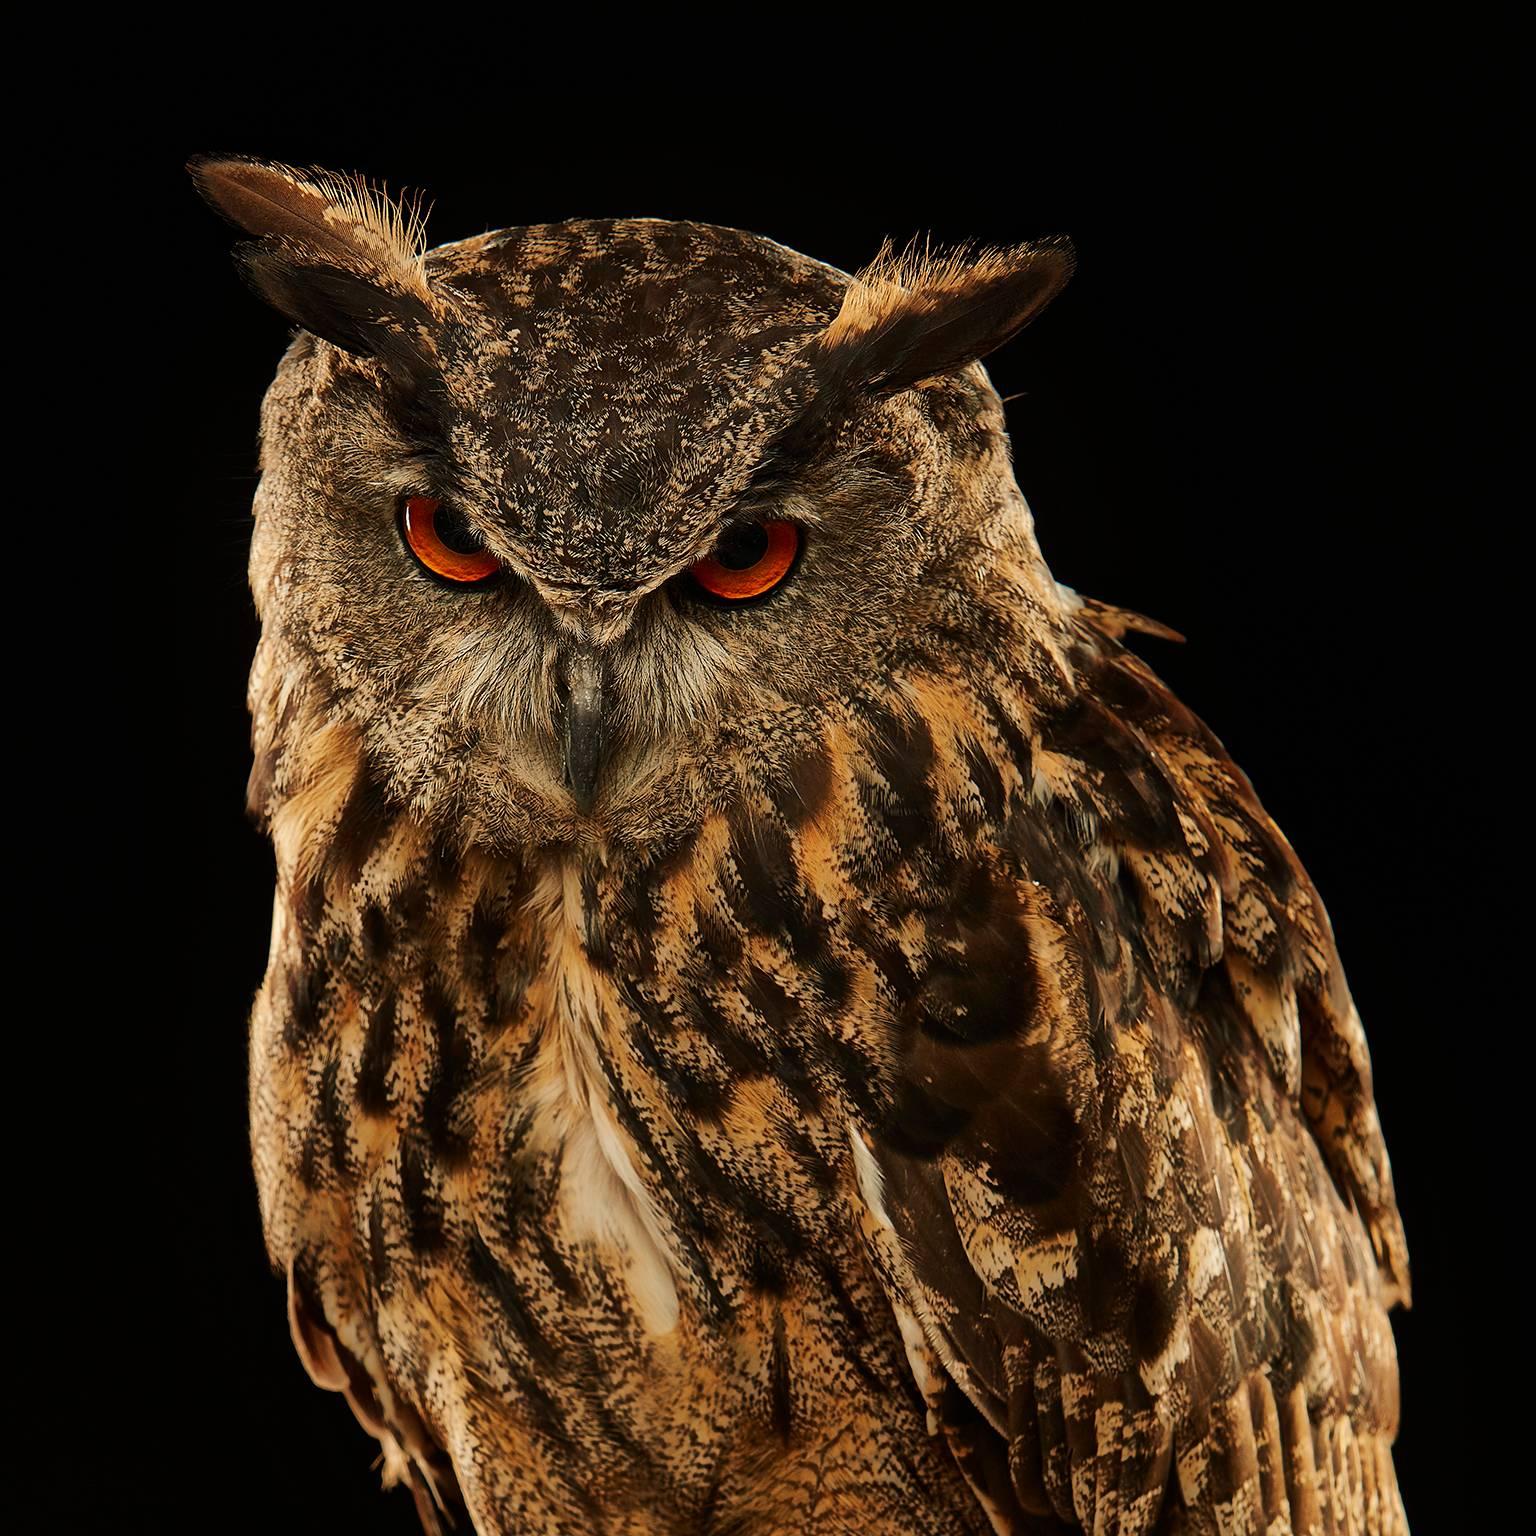 Birds of Prey - Eurasian Eagle Owl No. 12 - Photograph by Chris Gordaneer